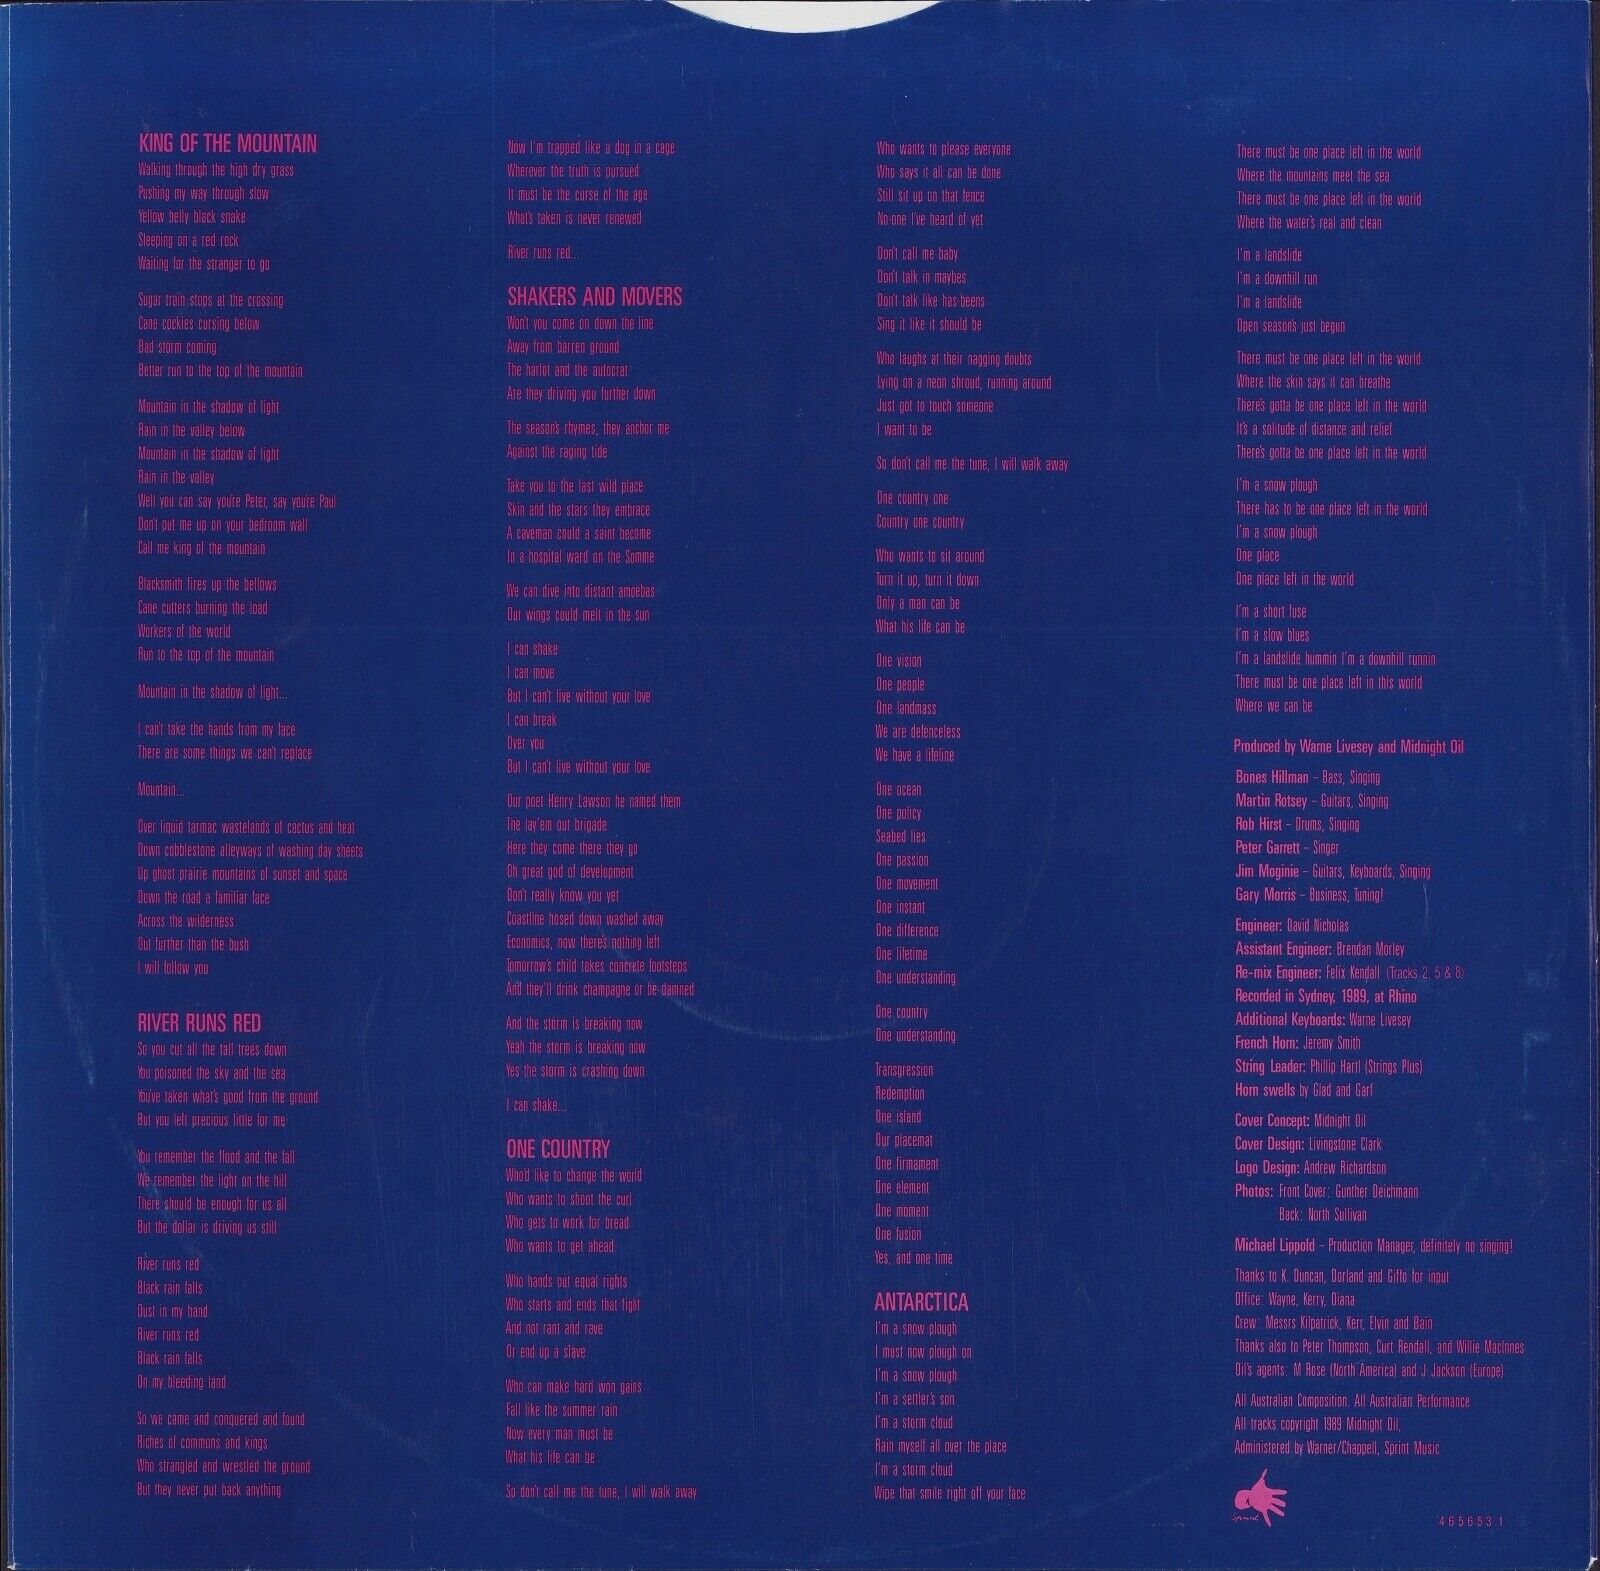 Midnight Oil ‎- Blue Sky Mining Vinyl LP